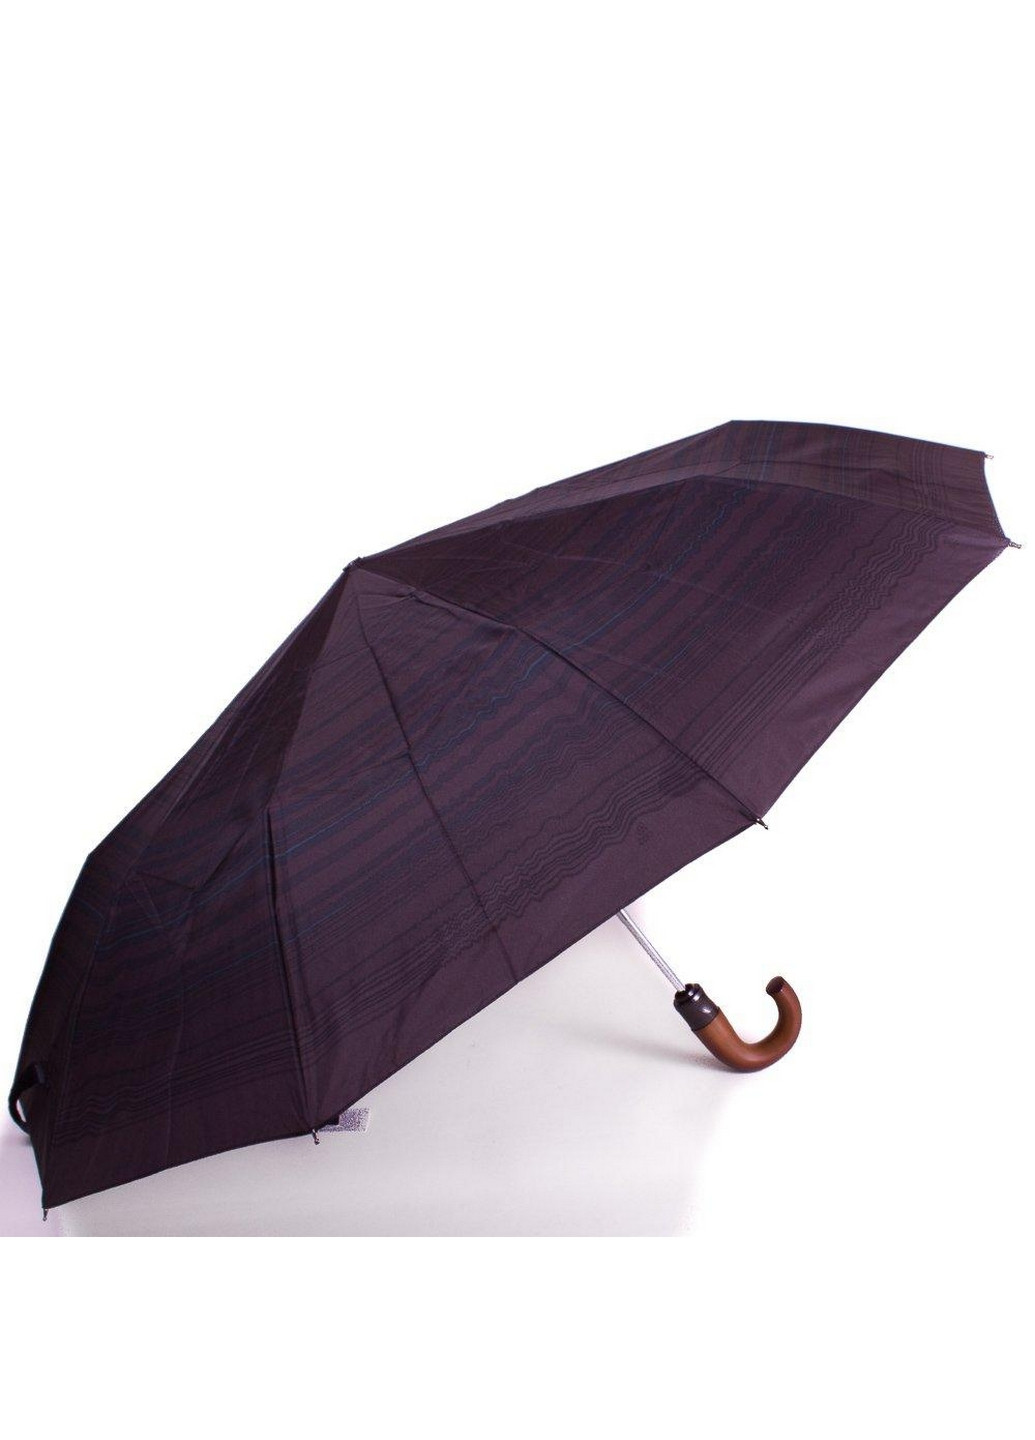 Мужской складной зонт полуавтомат 108,5 см Zest (260330700)